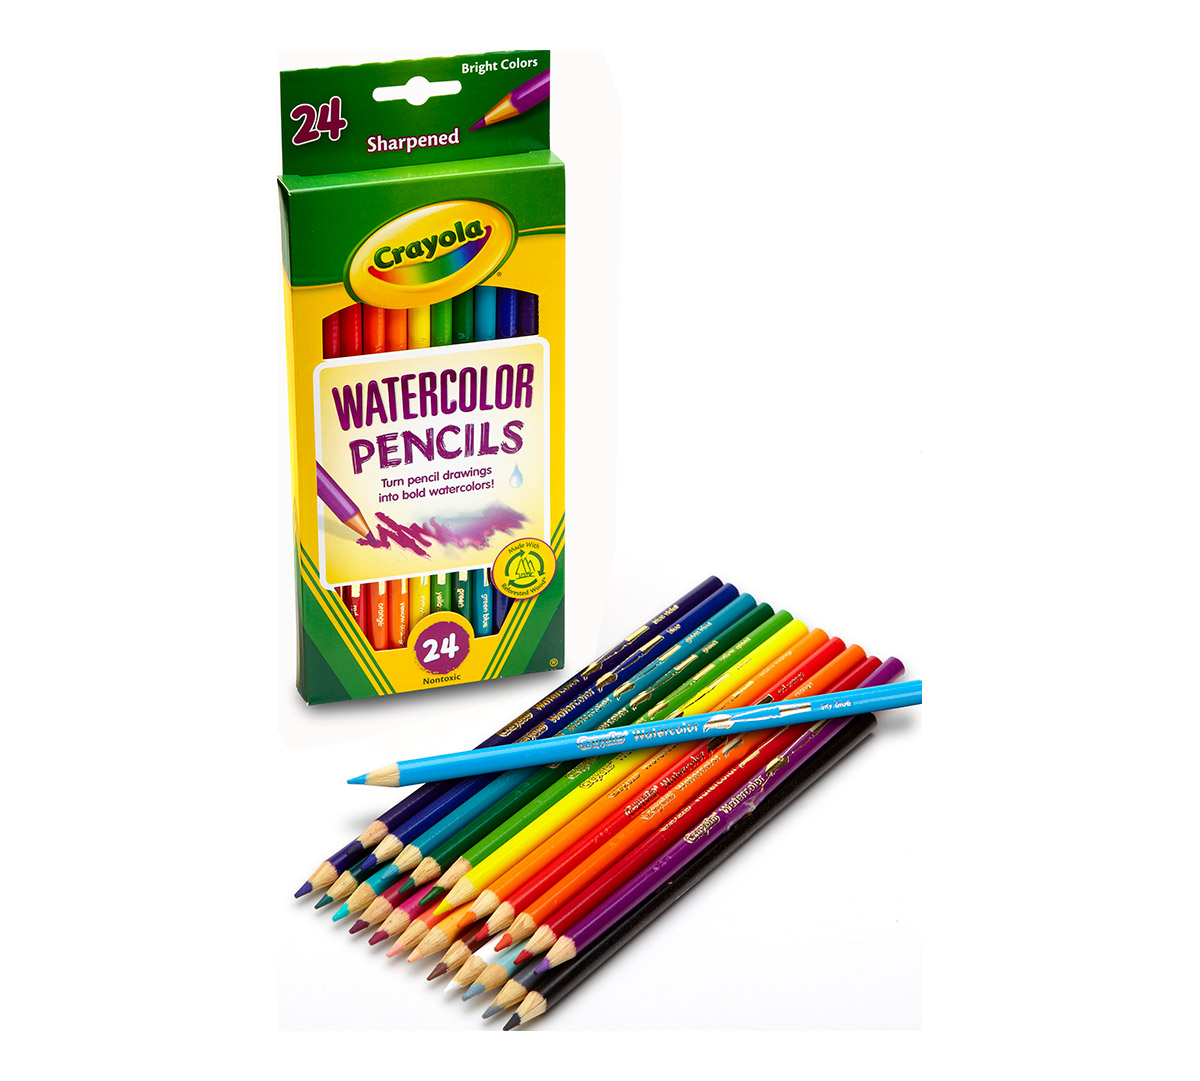 Crayon and Pencil Sharpener Crayola 24ct Watercolor Colored Pencils Crayola Washable Watercolors 2 Pack 